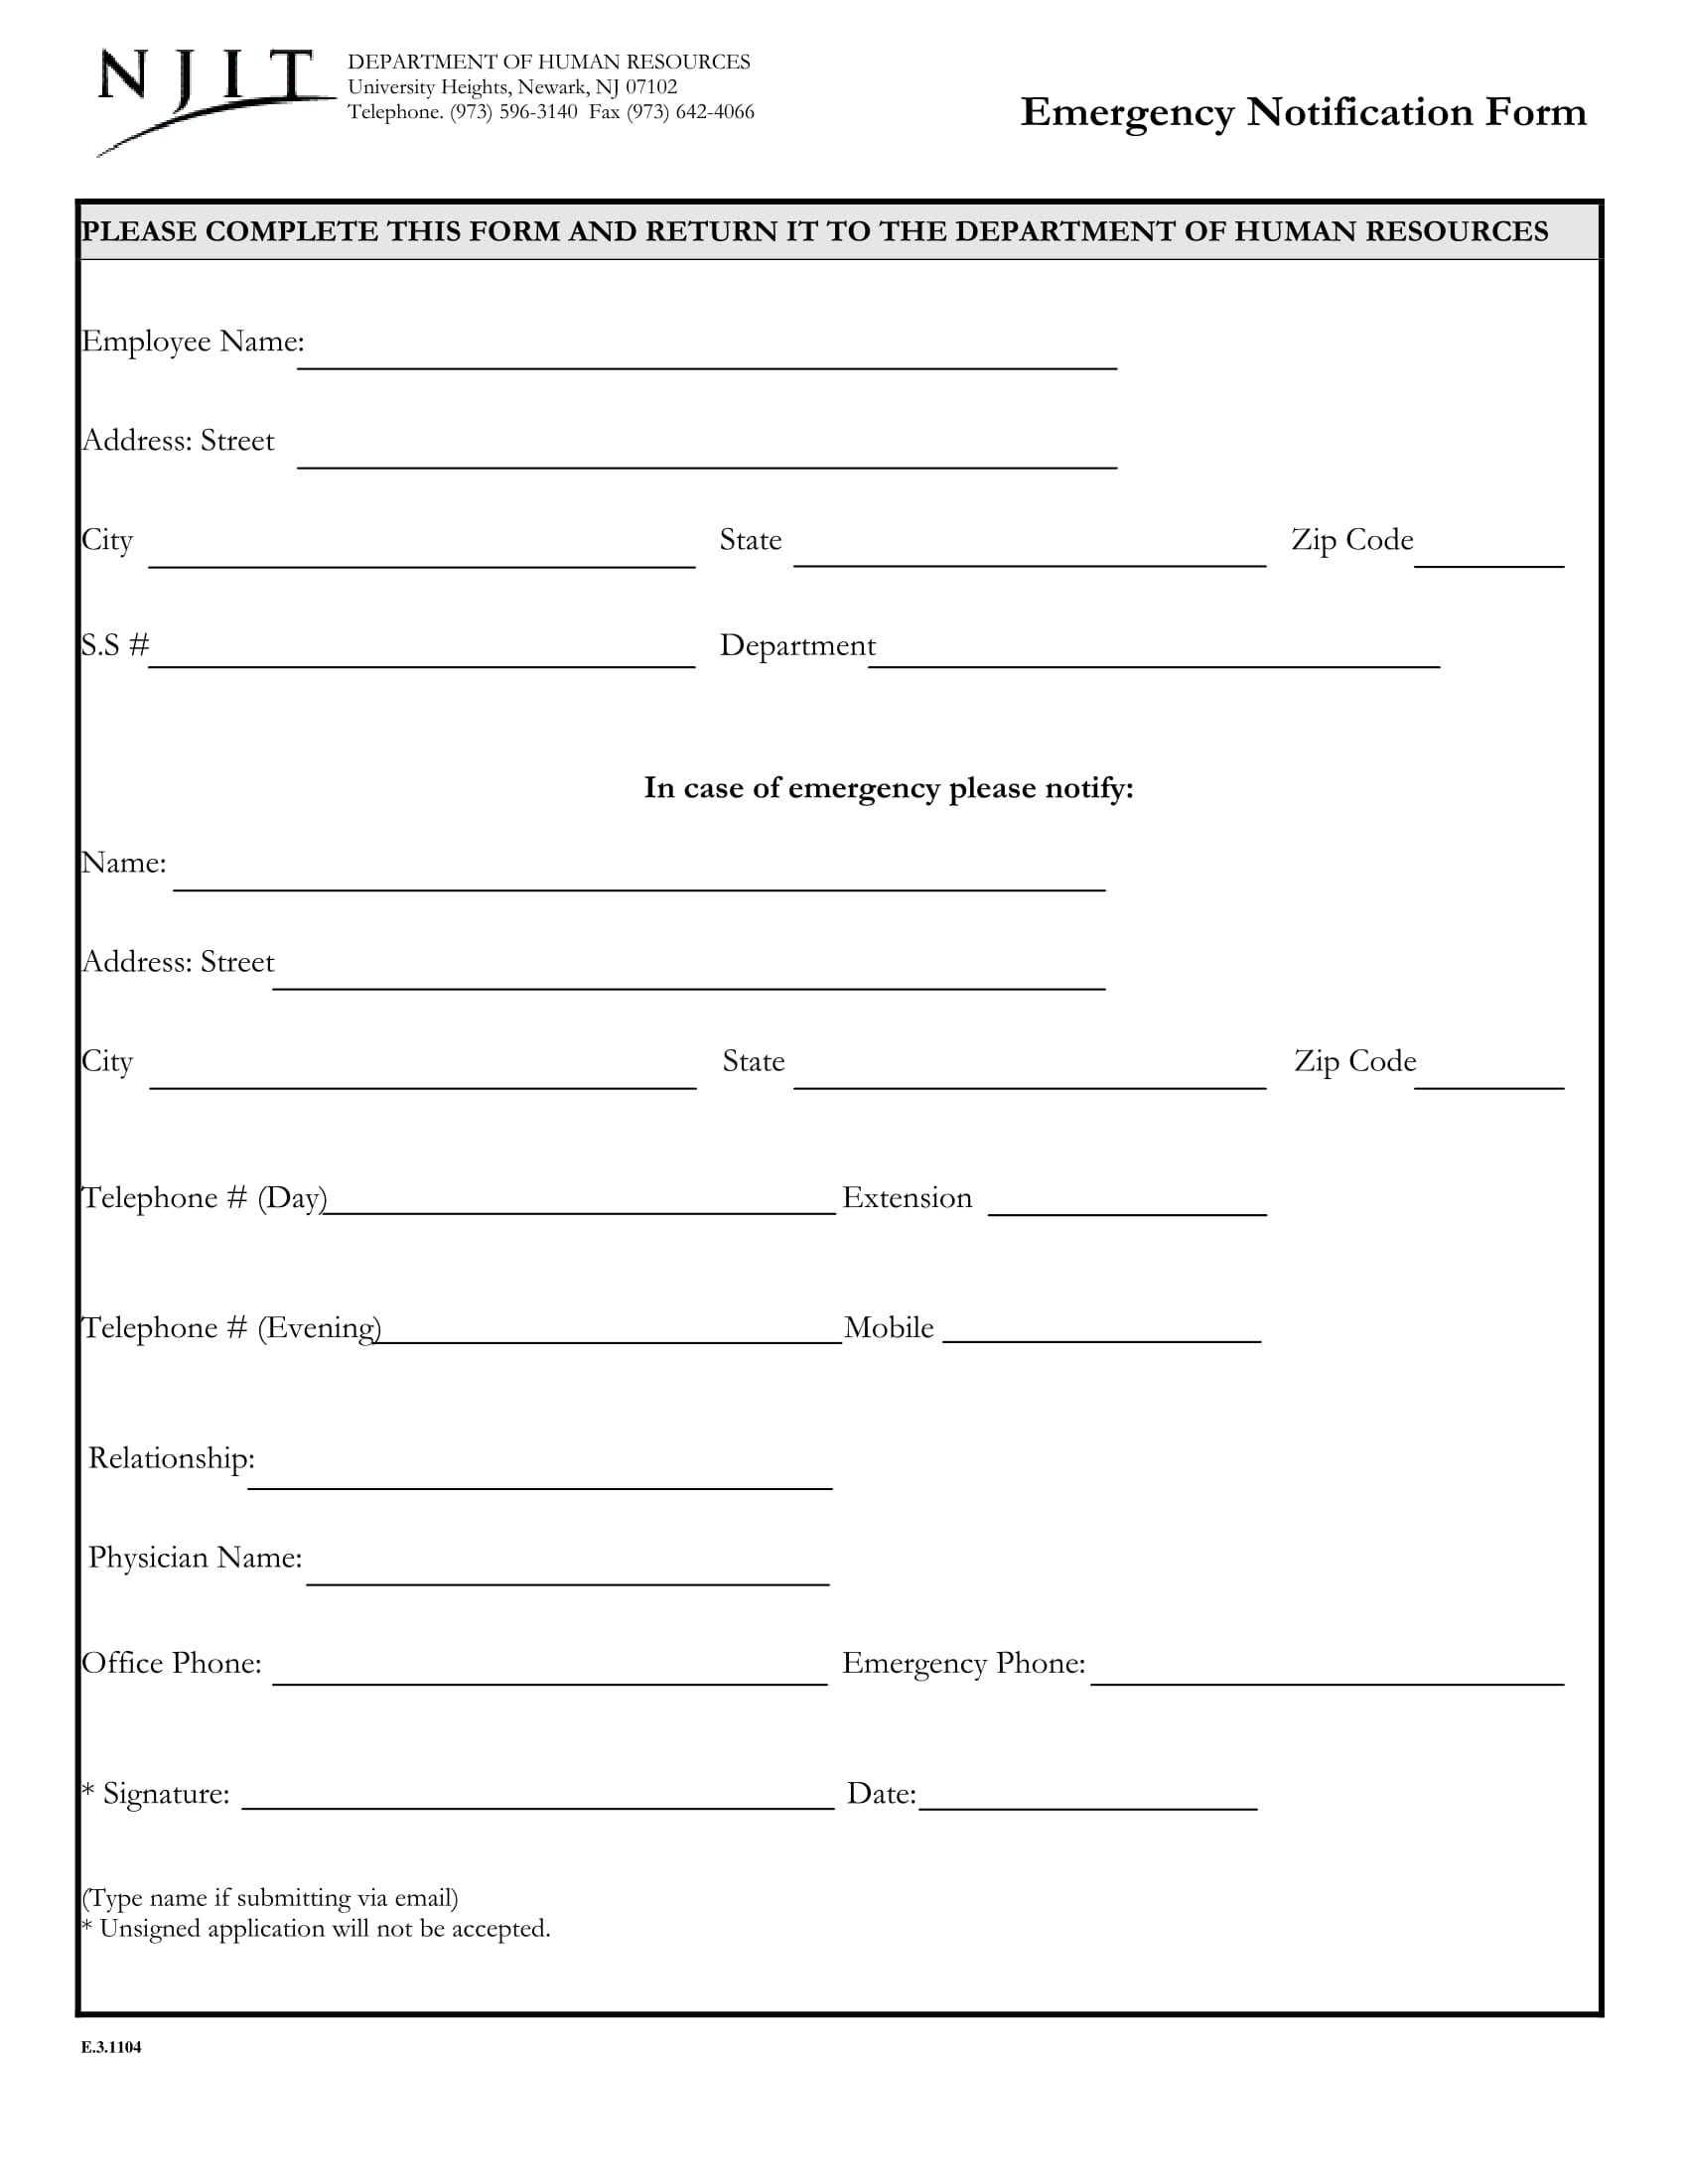 standard employee emergency notification form 1